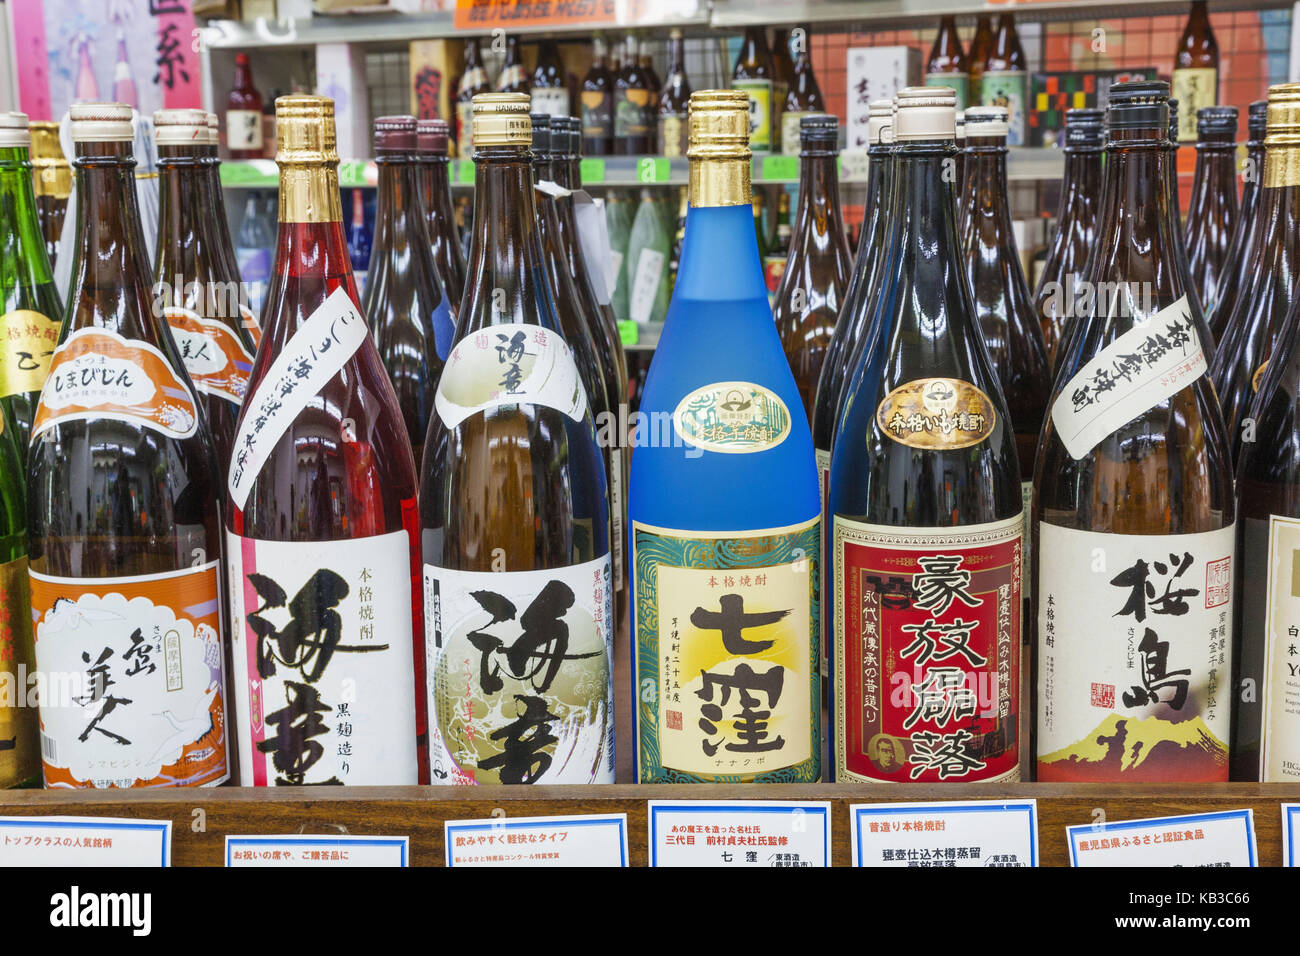 Japan, Kyushu, Kagoshima, Ibusuki, souvenirs, wine bottles, sake, Stock Photo